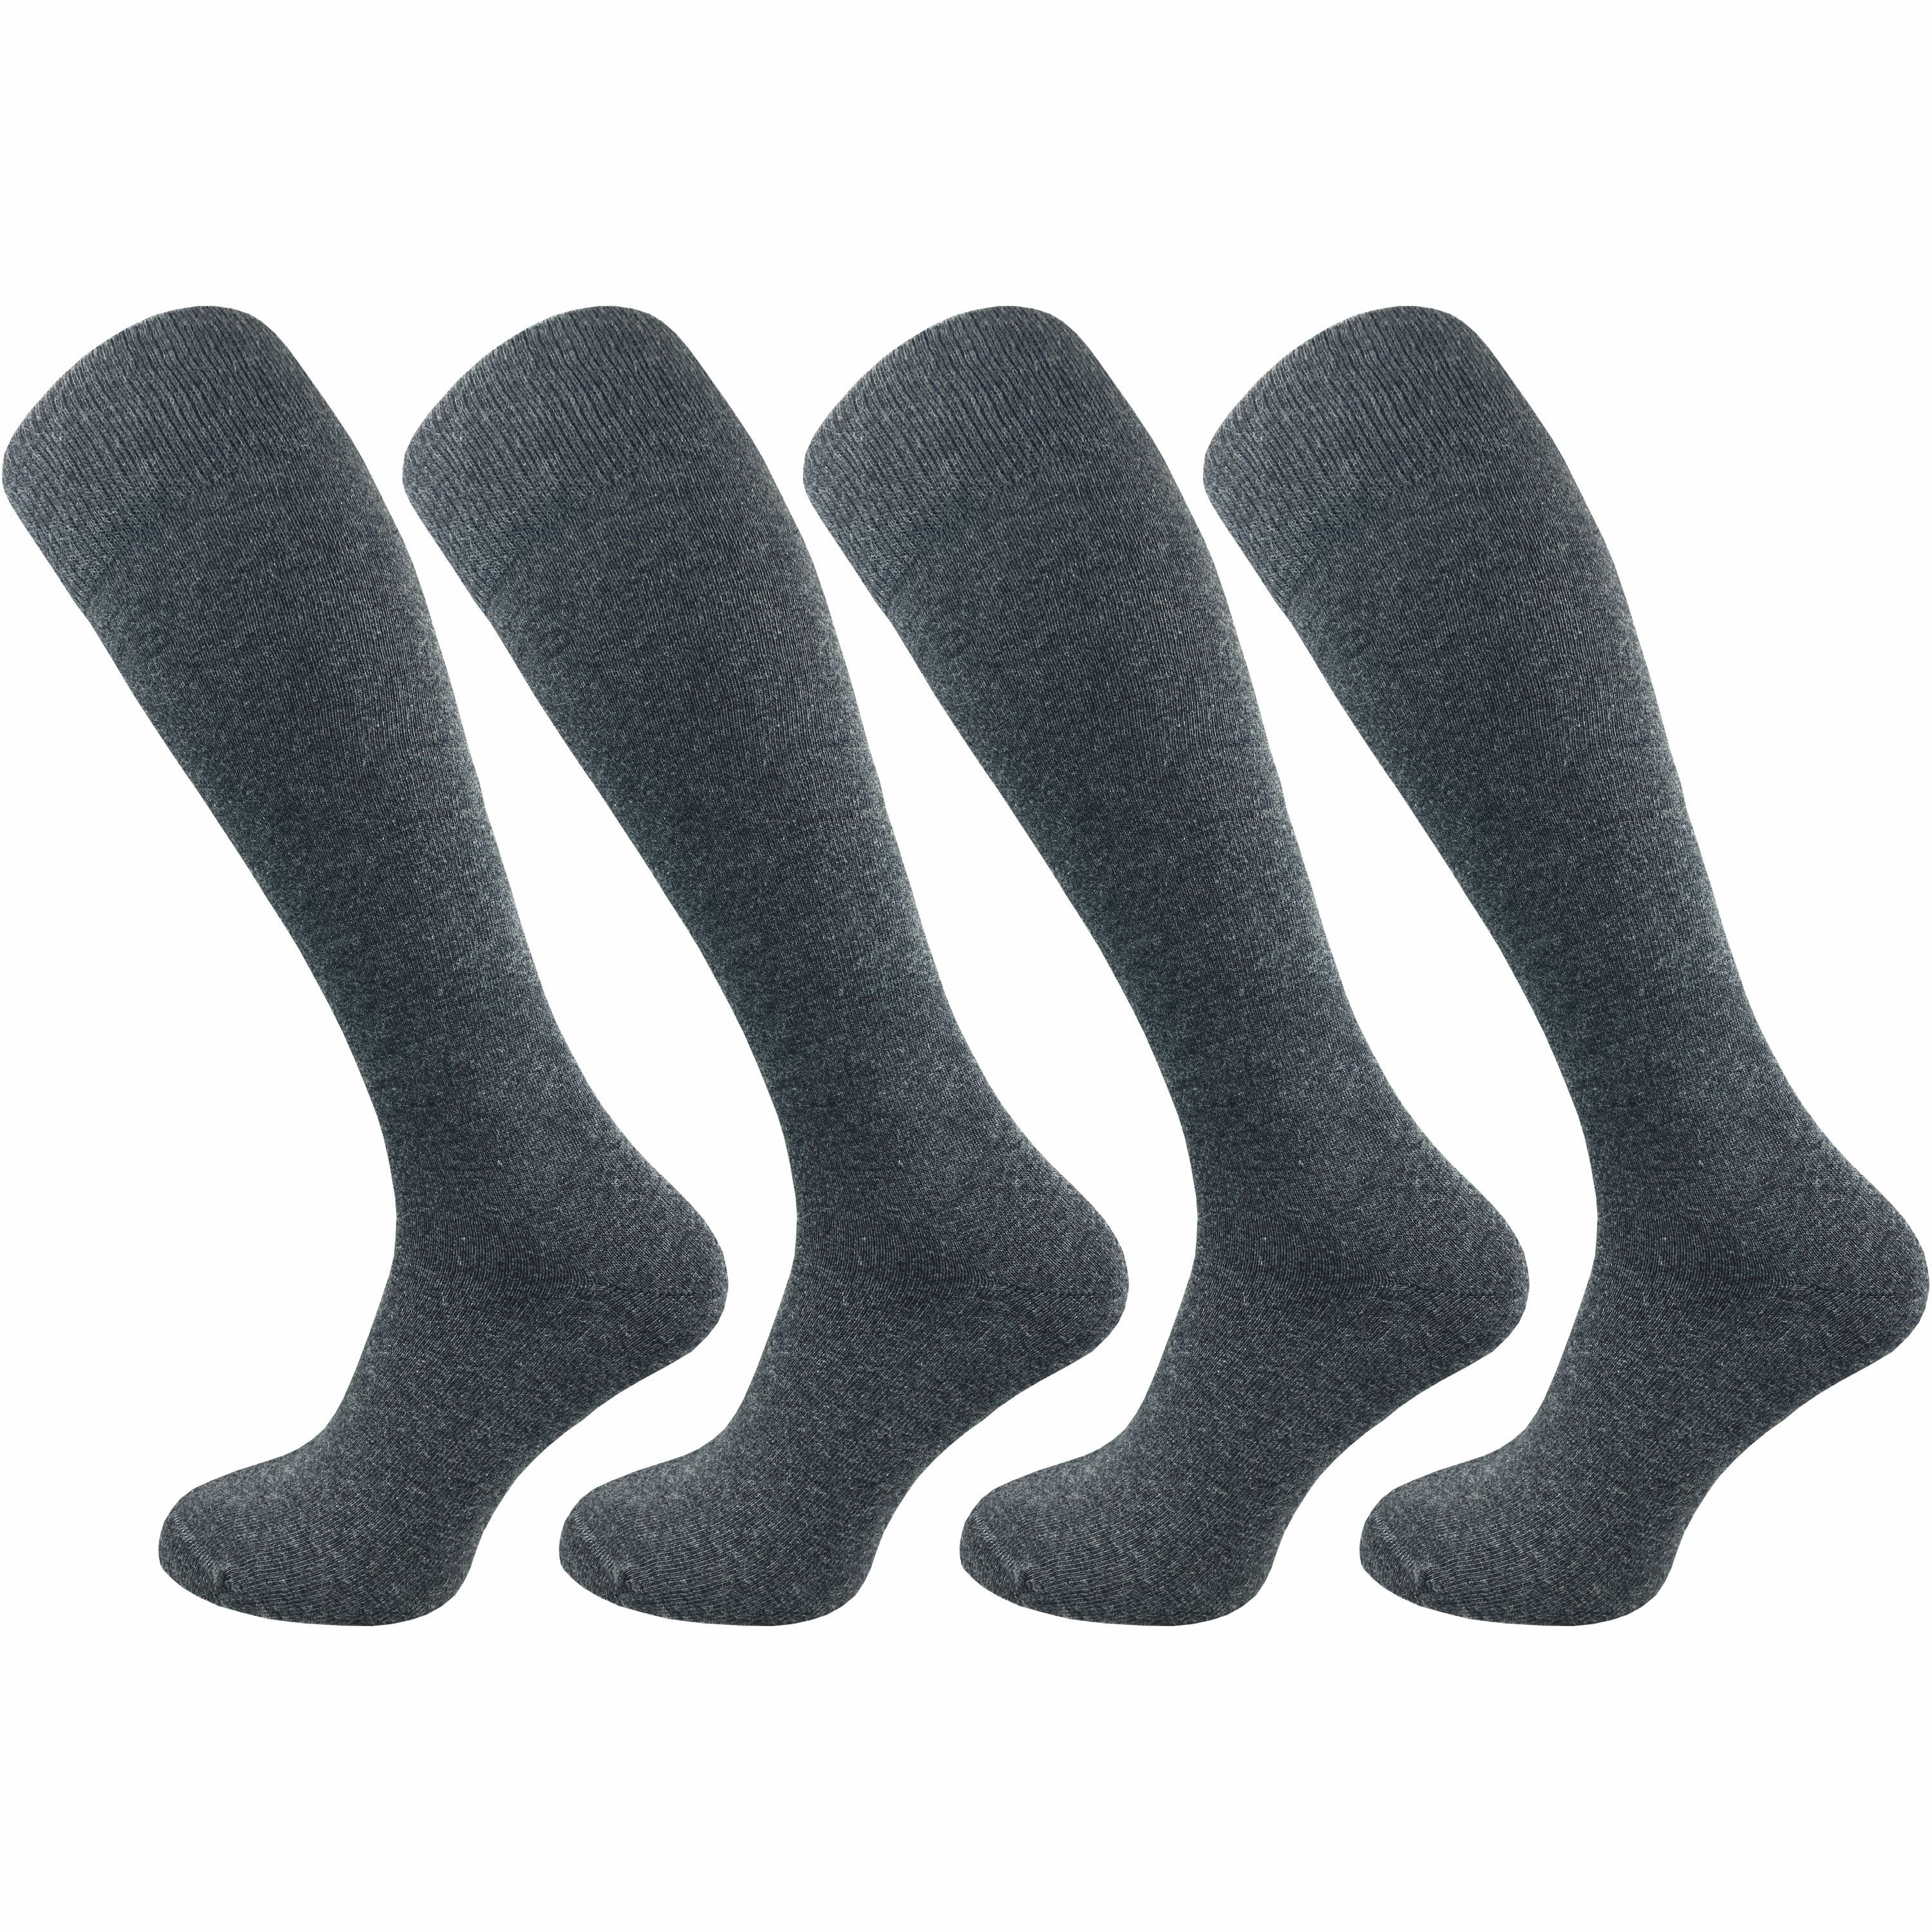 GAWILO Kniestrümpfe für Damen aus Baumwolle - extra weich & ohne drückende Naht (4 Paar) Lange Socken mit speziellem Komfortbund, der nicht einschneidet grau